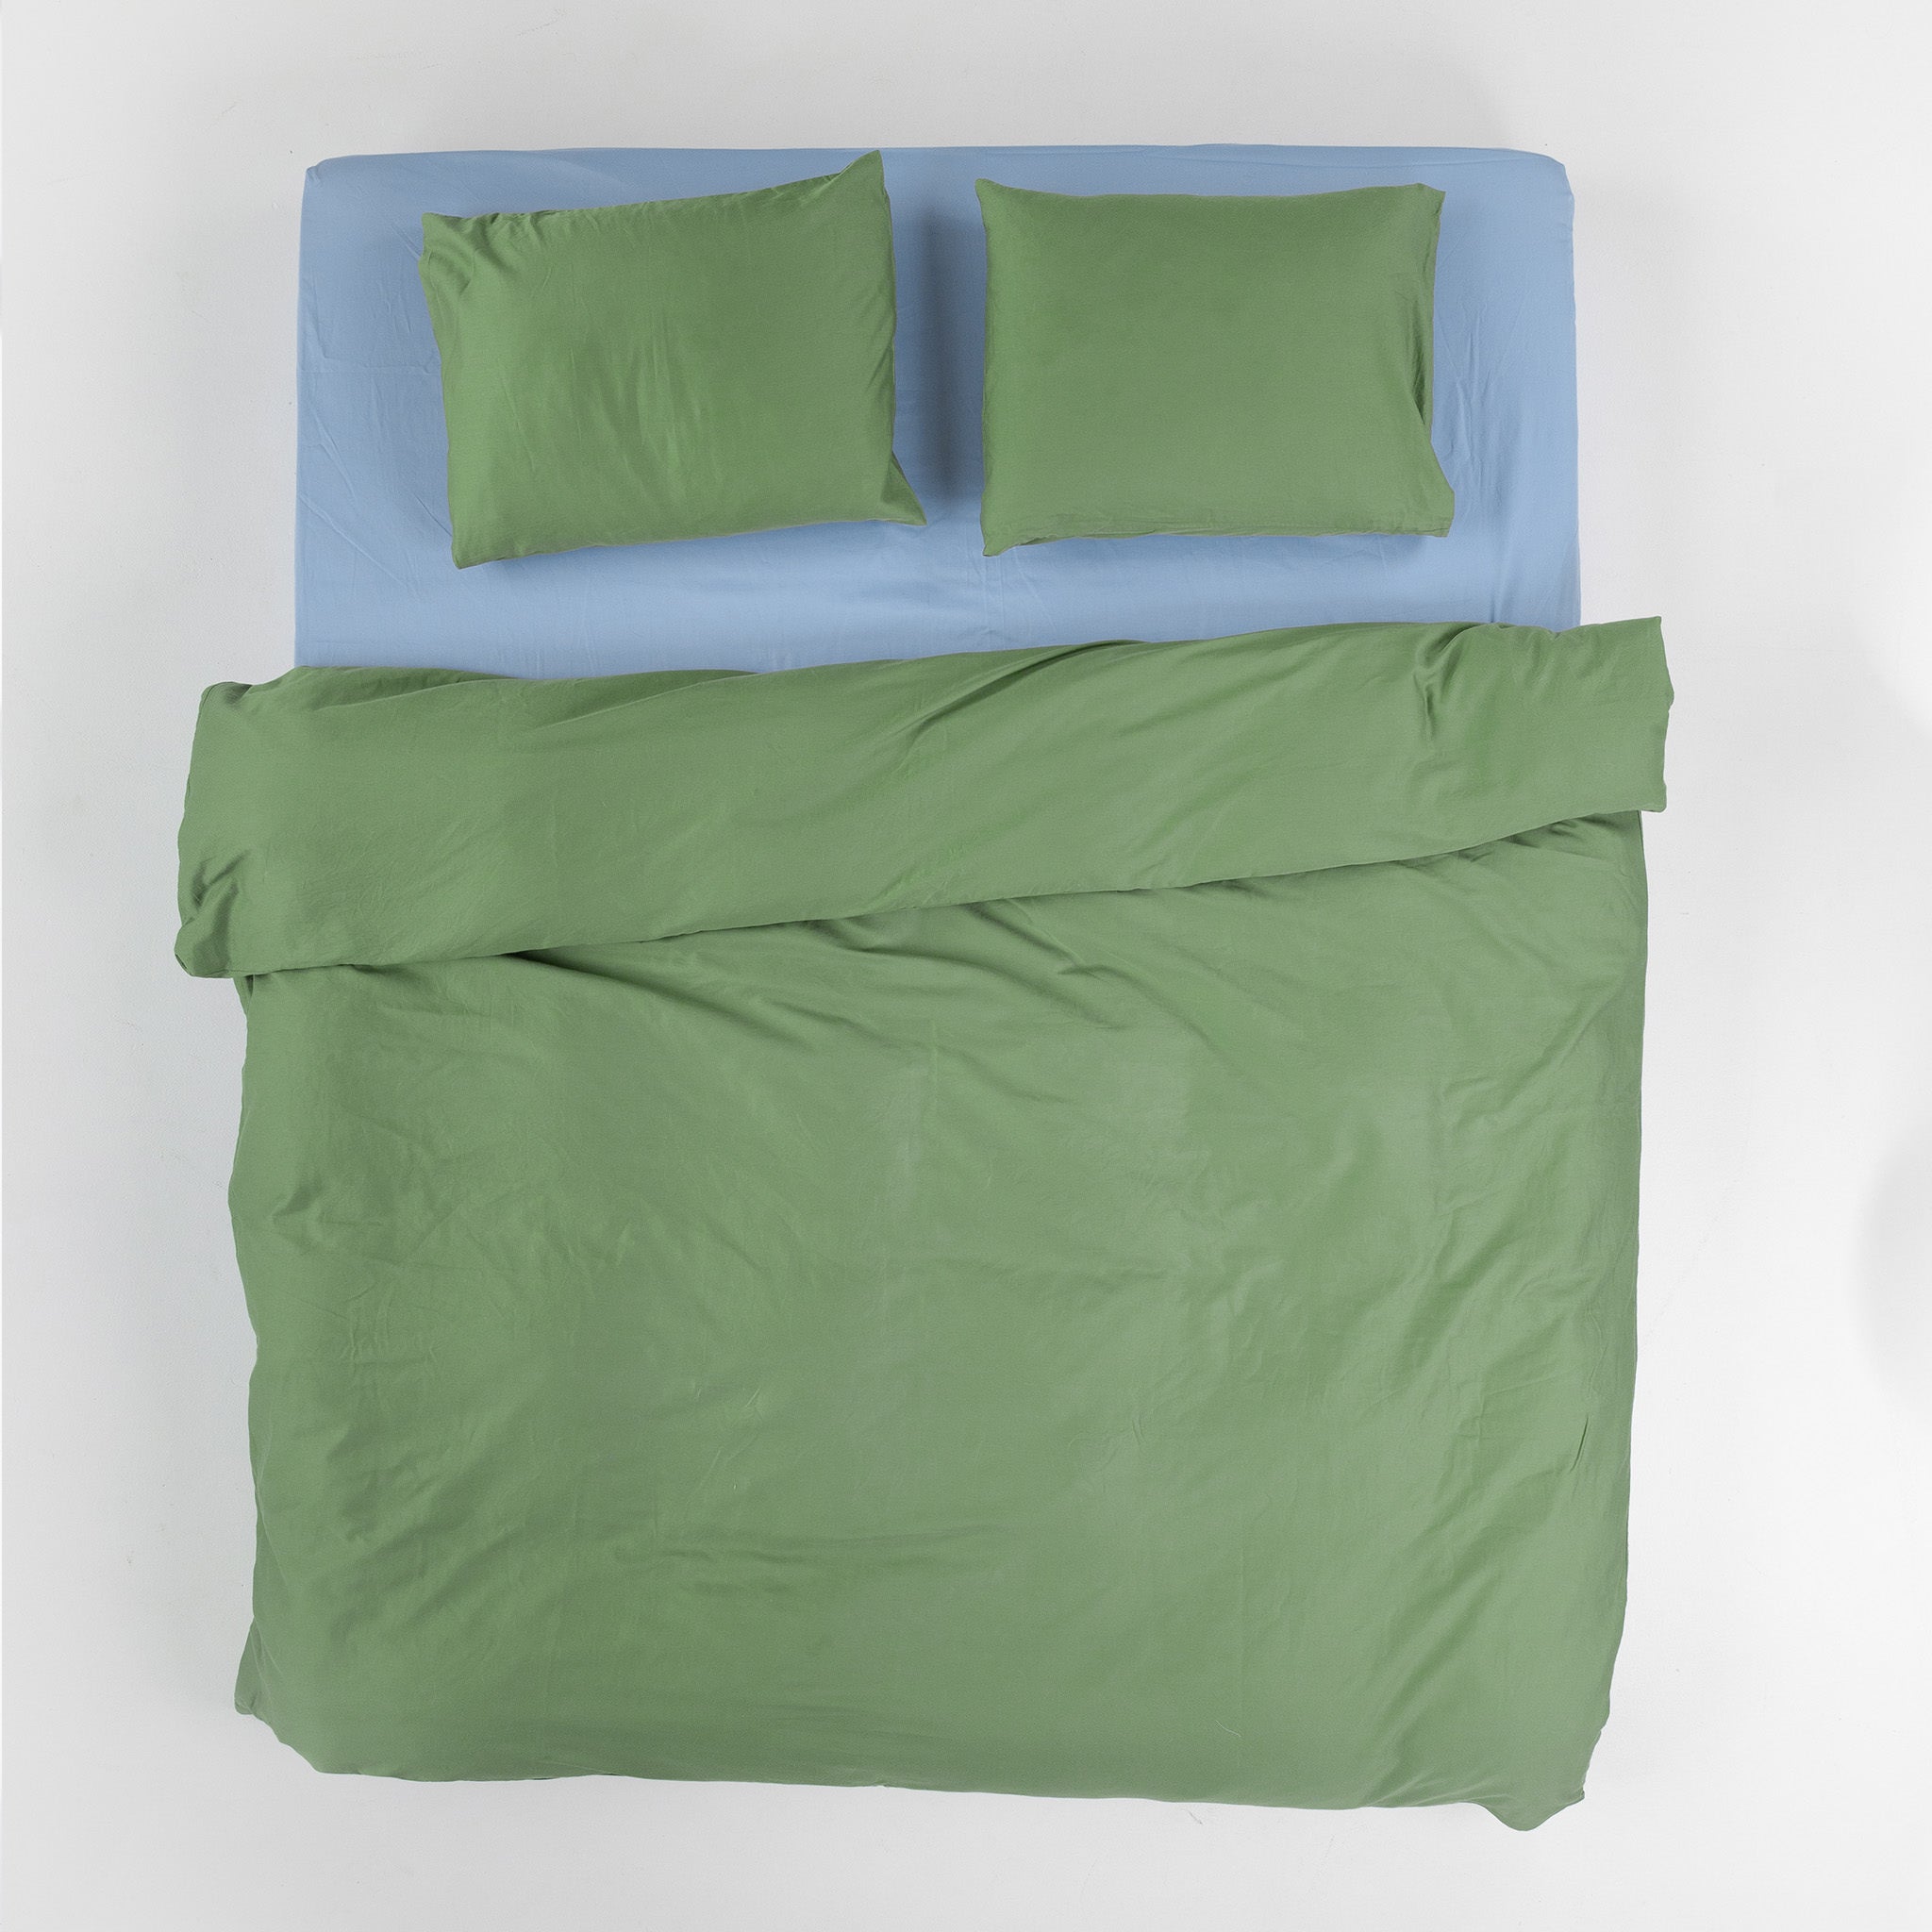 Duvet Cover Set - Crispy Green